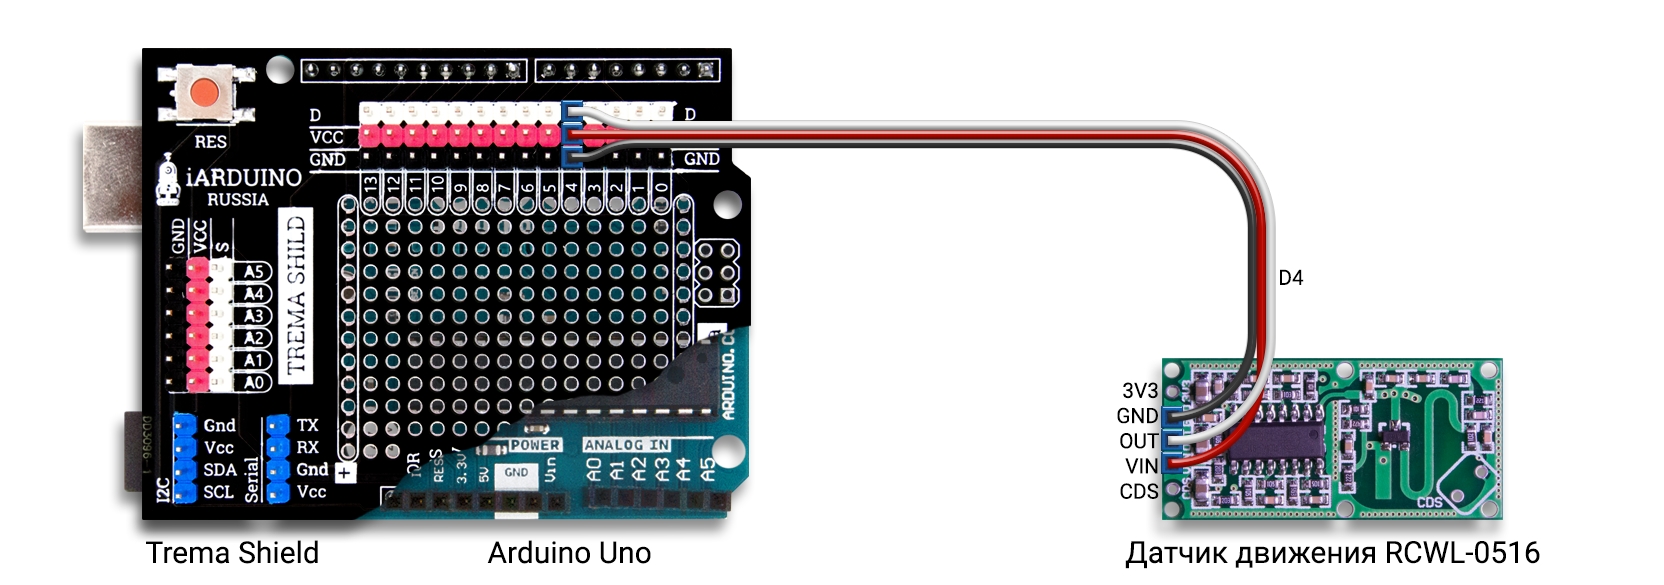 Подключение датчика движения RCWL-0516 к Arduino